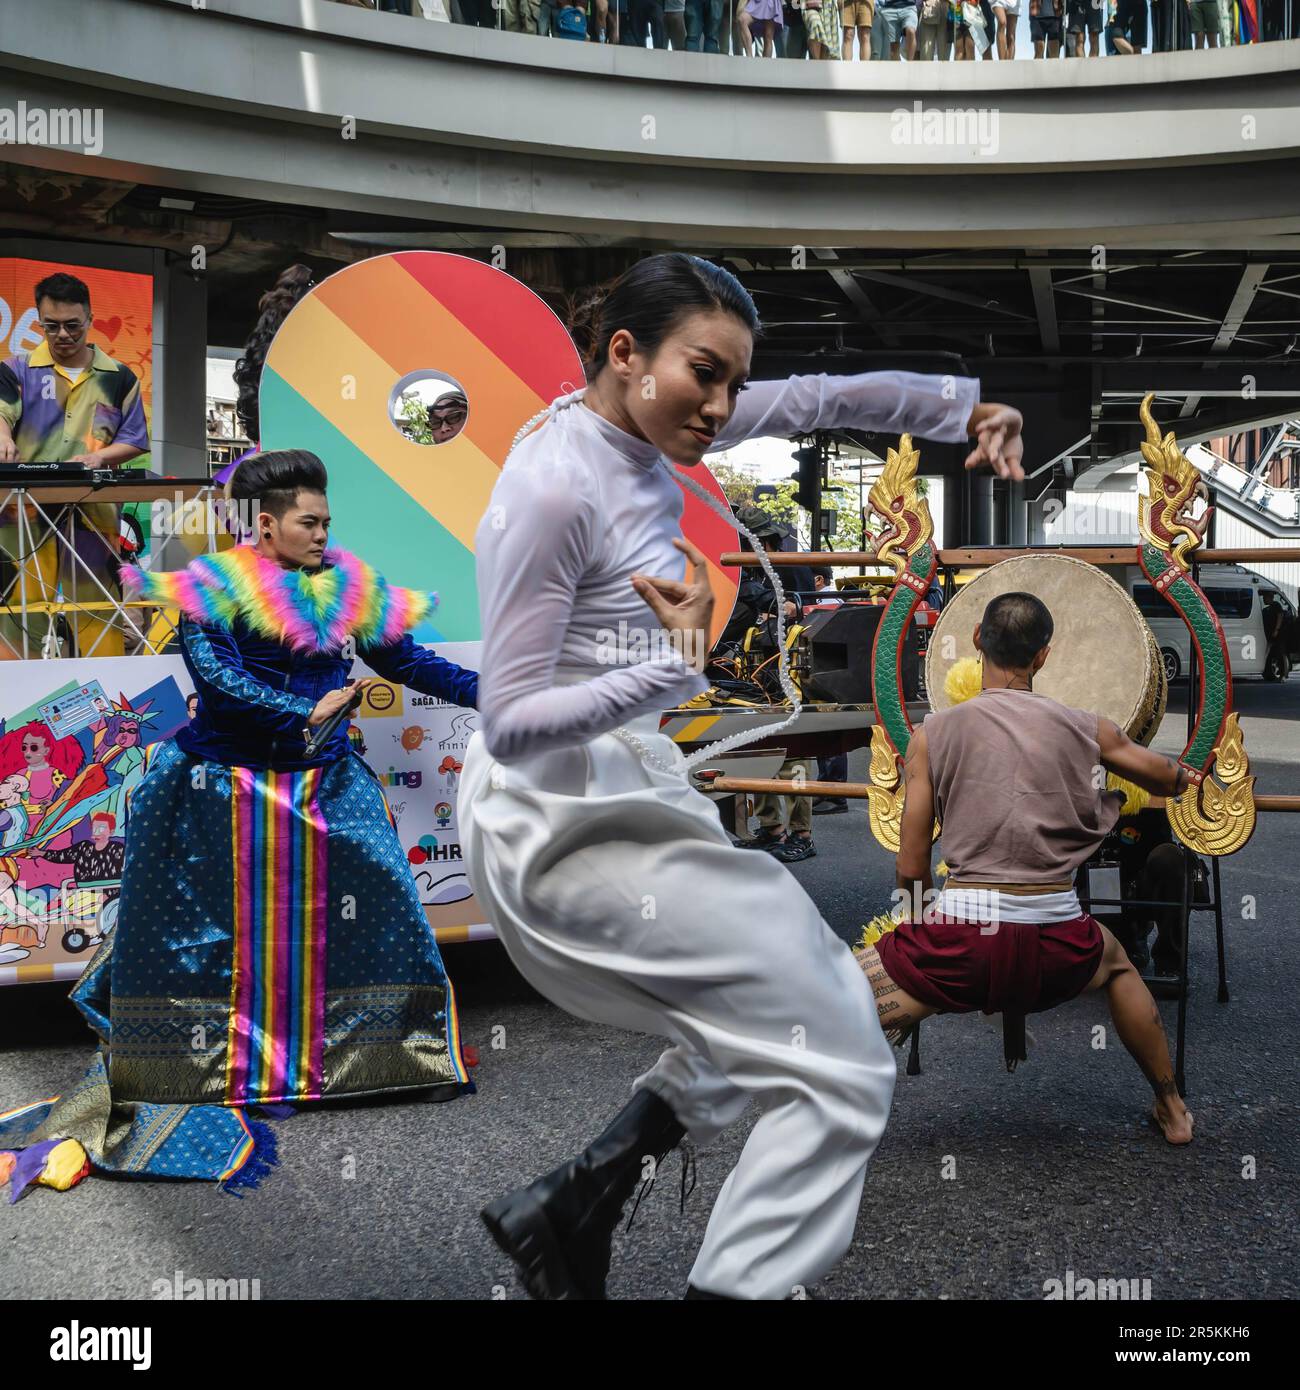 Los artistas de una carroza del desfile son vistos cantando y bailando durante el desfile del orgullo de Bangkok 2023, en la intersección de Pathumwan. Organizado por la organización sin fines de lucro Naruemit Pride y la Administración Metropolitana de Bangkok, Bangkok PRIDE DESFILE 2023 bajo el tema ìBeyond Genderî Empieza desde el Centro de Arte y Cultura de Bangkok (BACC) en la intersección de Pathumwan con Rama 1 Road. Organizado por la organización sin fines de lucro Naruemit Pride y la Administración Metropolitana de Bangkok, el desfile del orgullo de Bangkok 2023 bajo el tema “Más allá del género” comienza desde el Centro de Arte y Cultura de Bangkok (BACC) en la intersección de Pathumwan Foto de stock